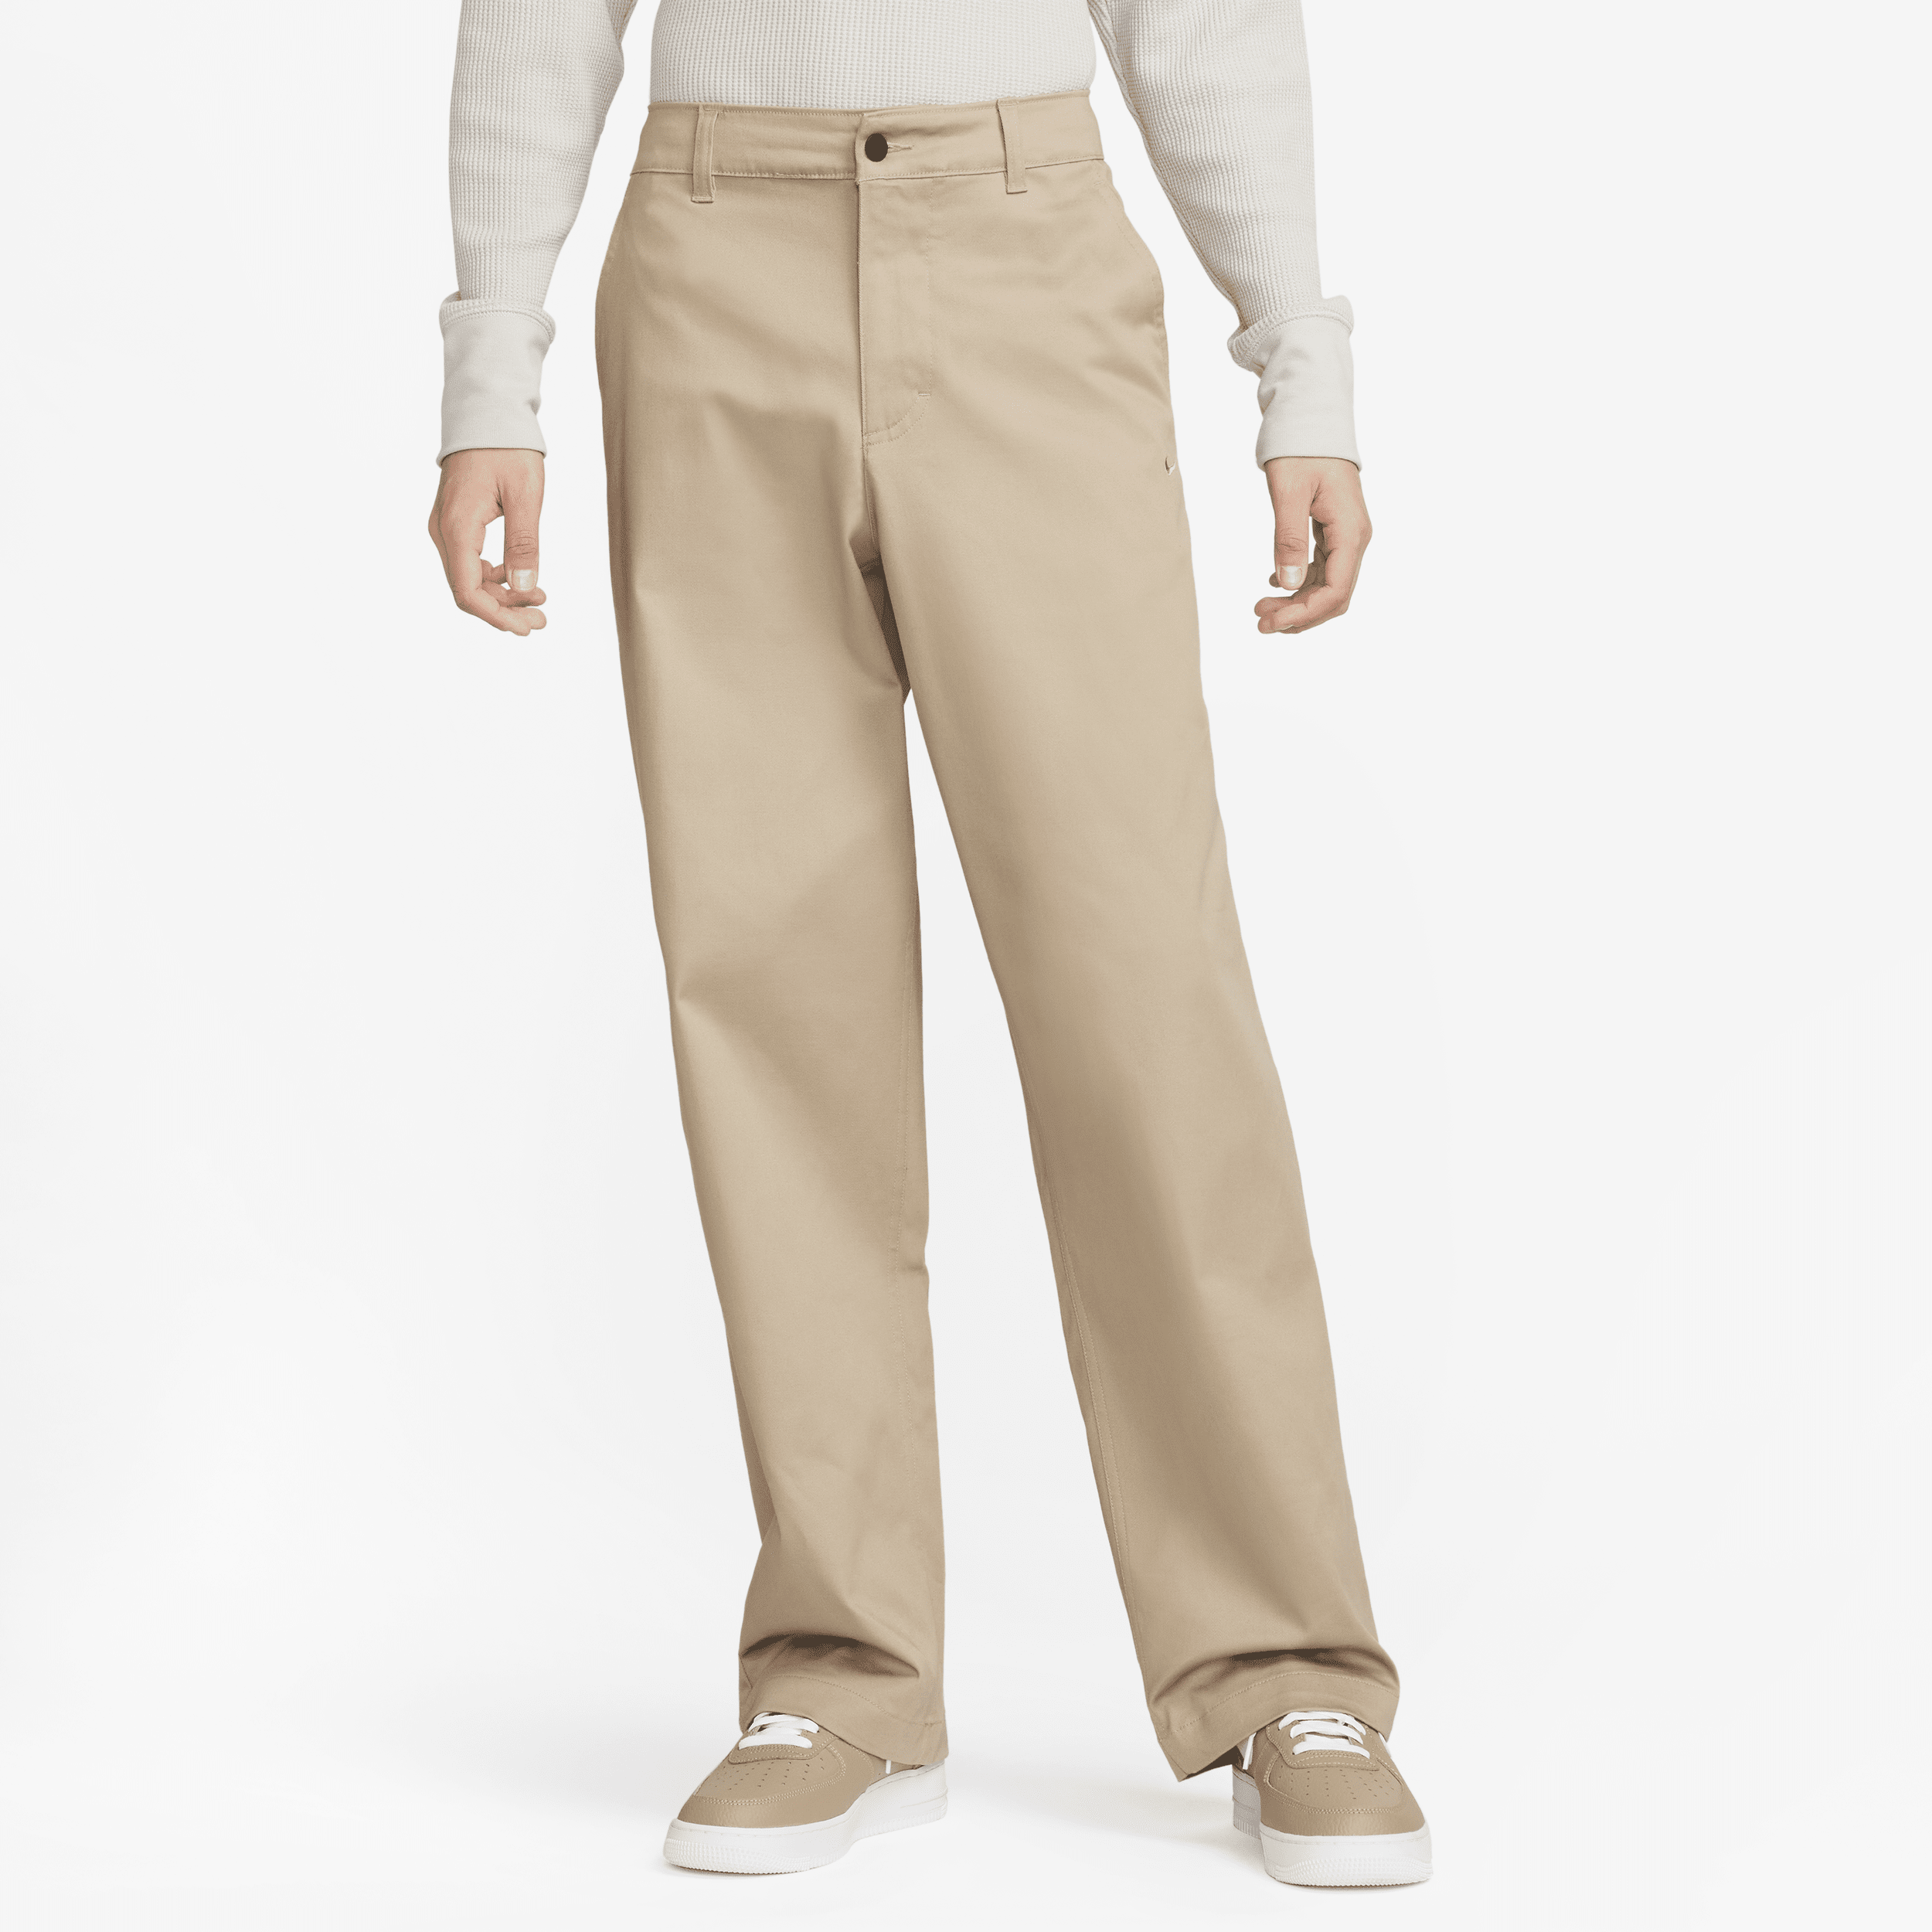 Nike Life Pantalón chino - Hombre - Marrón